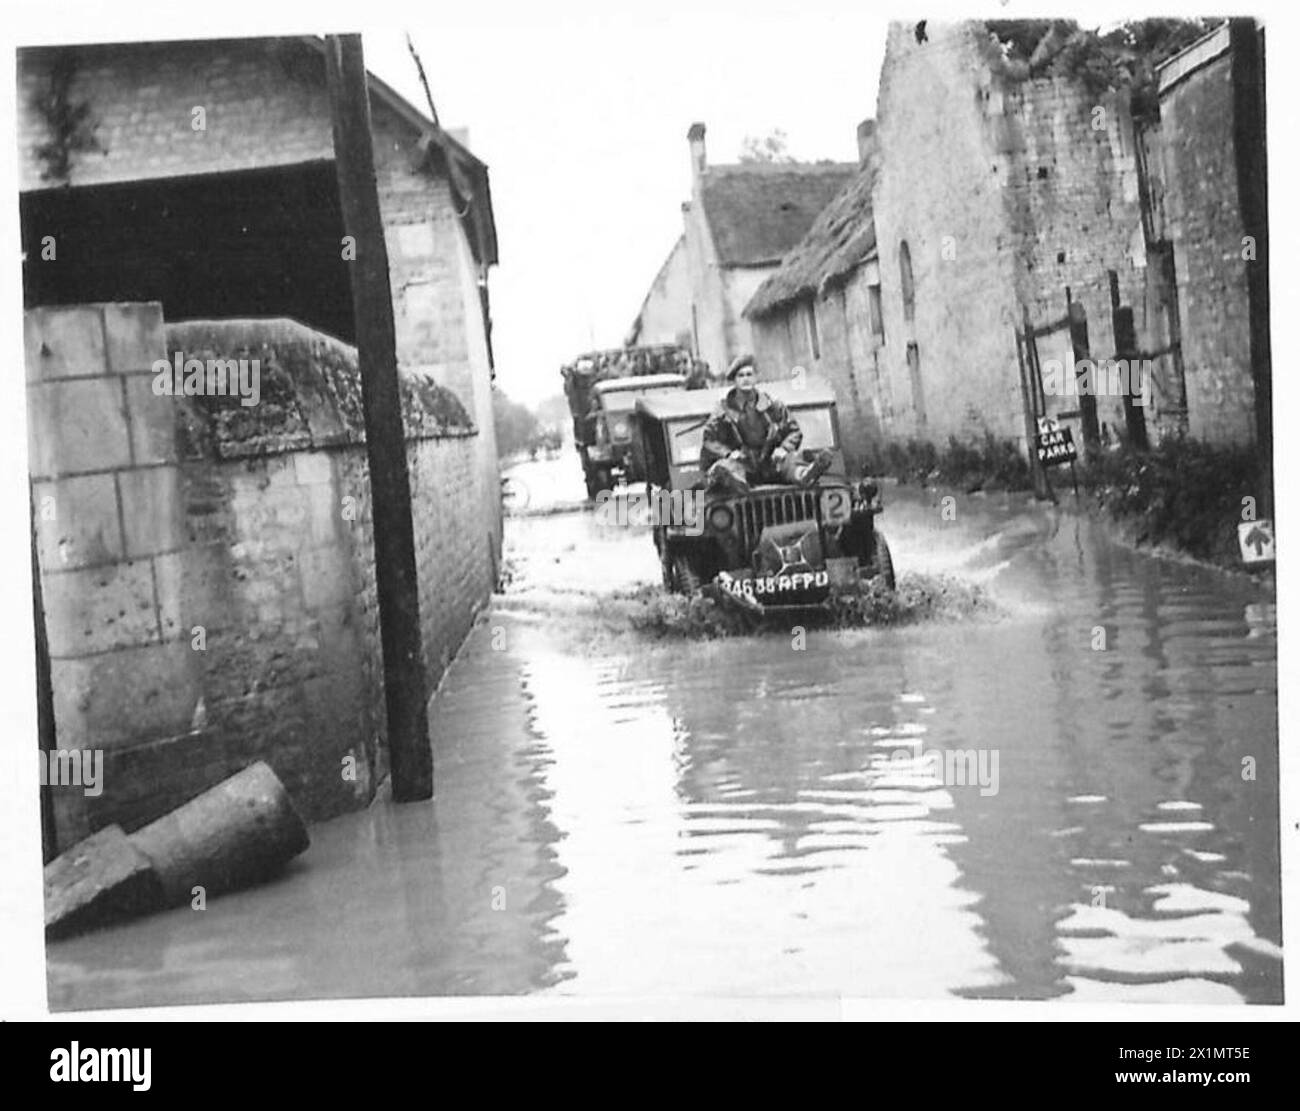 ROUTES INONDÉES EN NORMANDIE - assis sur le capot d'une jeep un soldat est conduit dans une rue inondée, British Army, 21st Army Group Banque D'Images